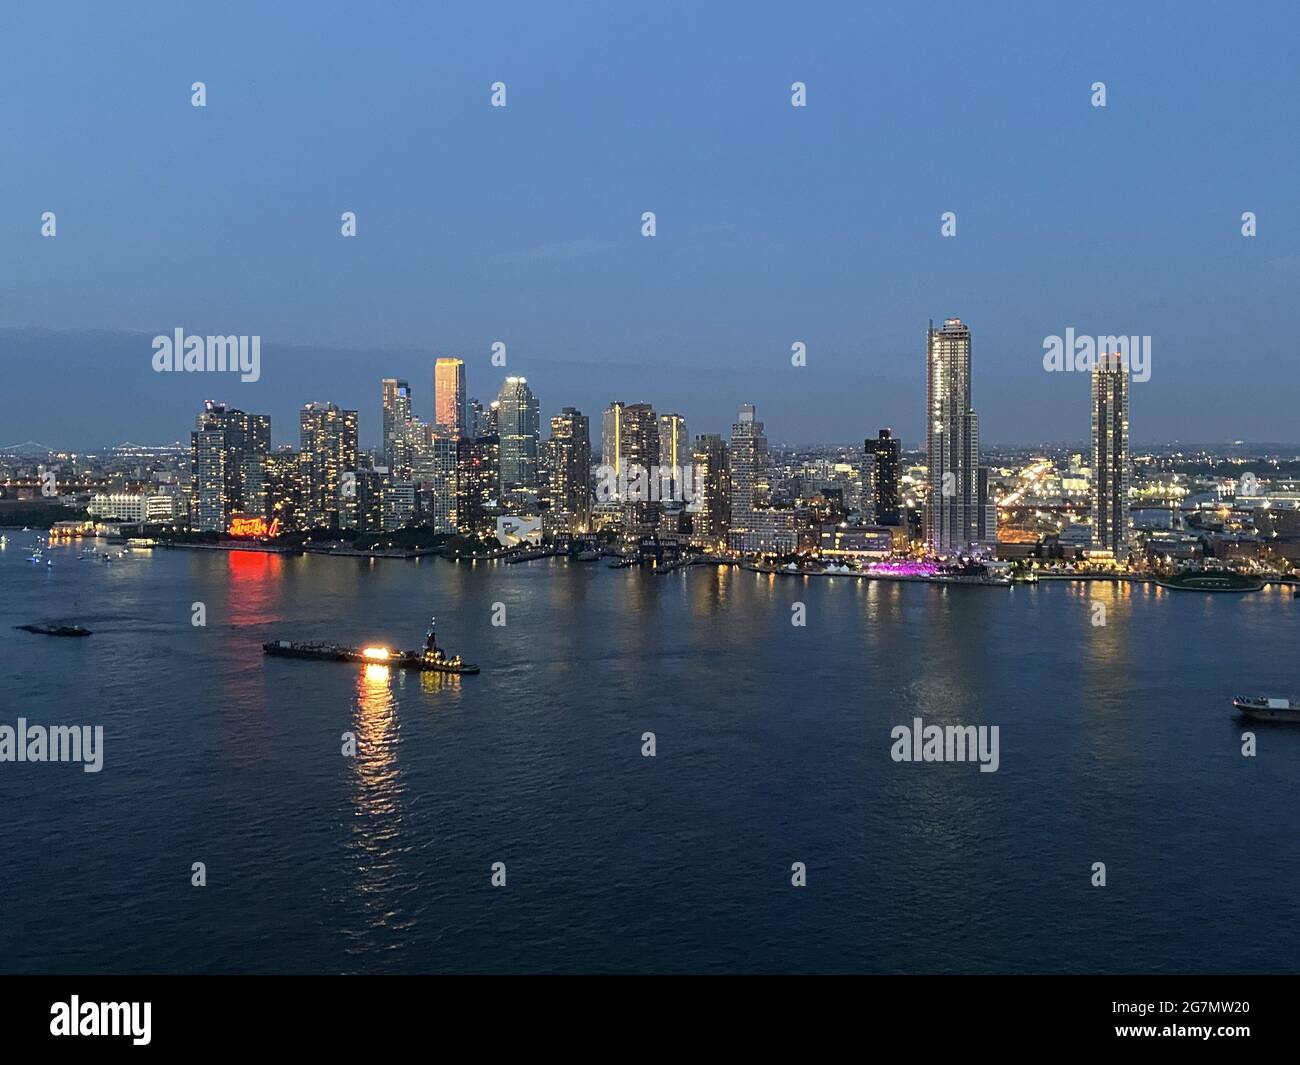 Blick über den East River von der 34th Street in Manhattan an der Queens Shoreline auf. Julhy 4. 2021. Auf den im Fluss zu sehenden Lastkähne wird nach Einbruch der Dunkelheit das Annullierungsfeuerwerk der Macy gestartet. Stockfoto